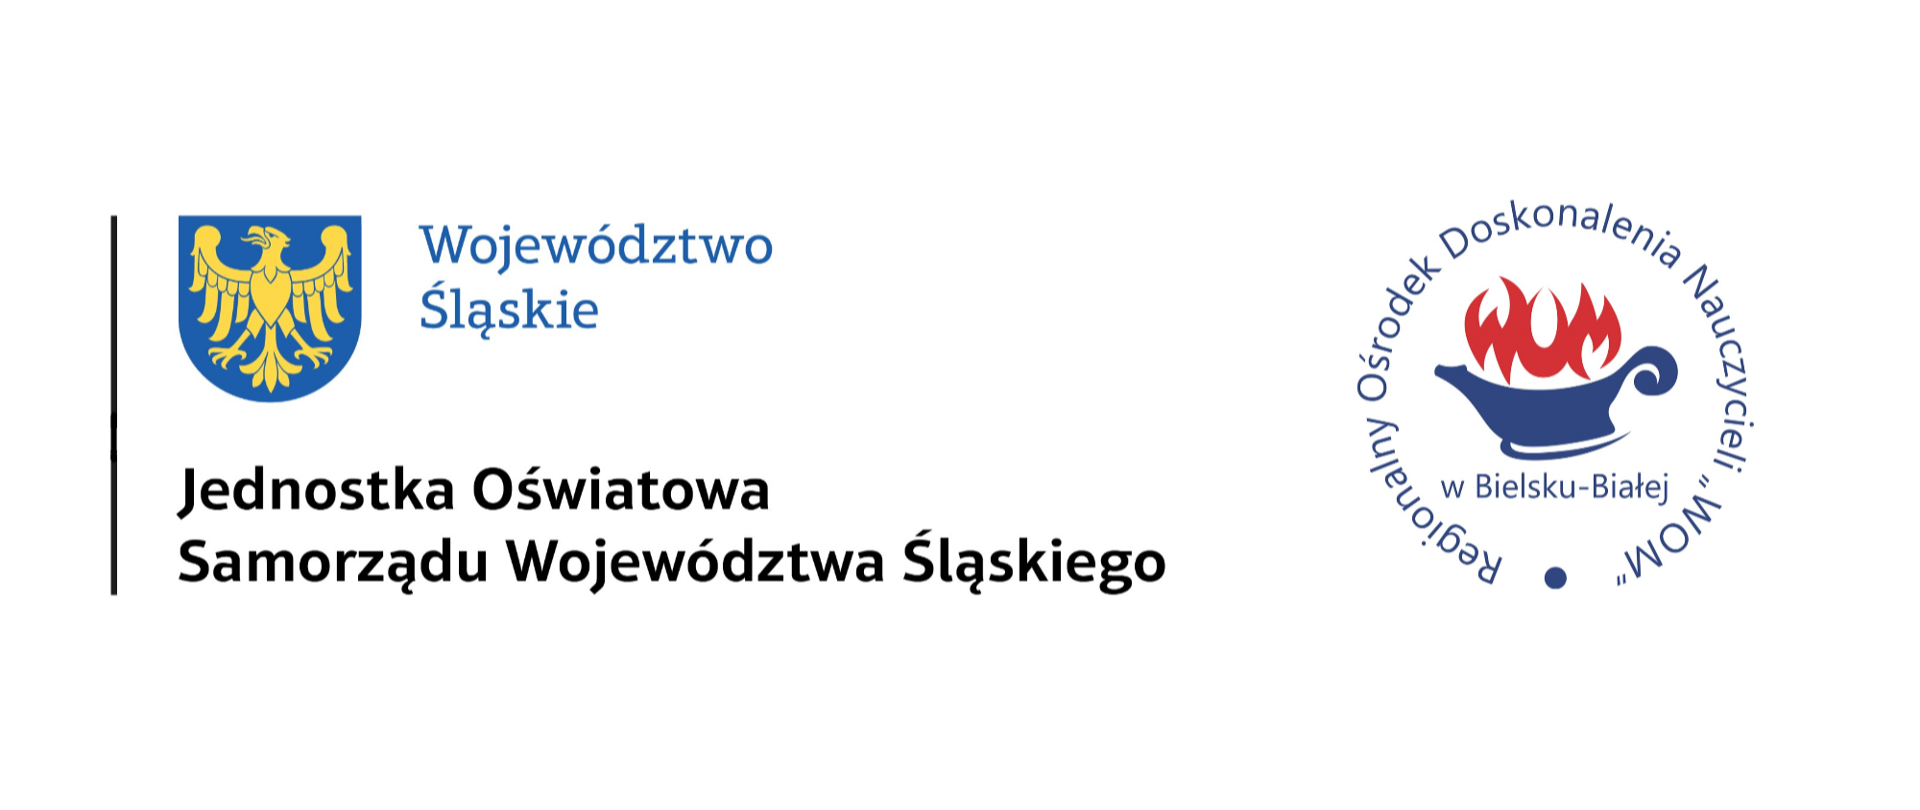 Logotyp RODN WOM w Bielsku-Białej oraz Logotyp Województwa Śląskiego